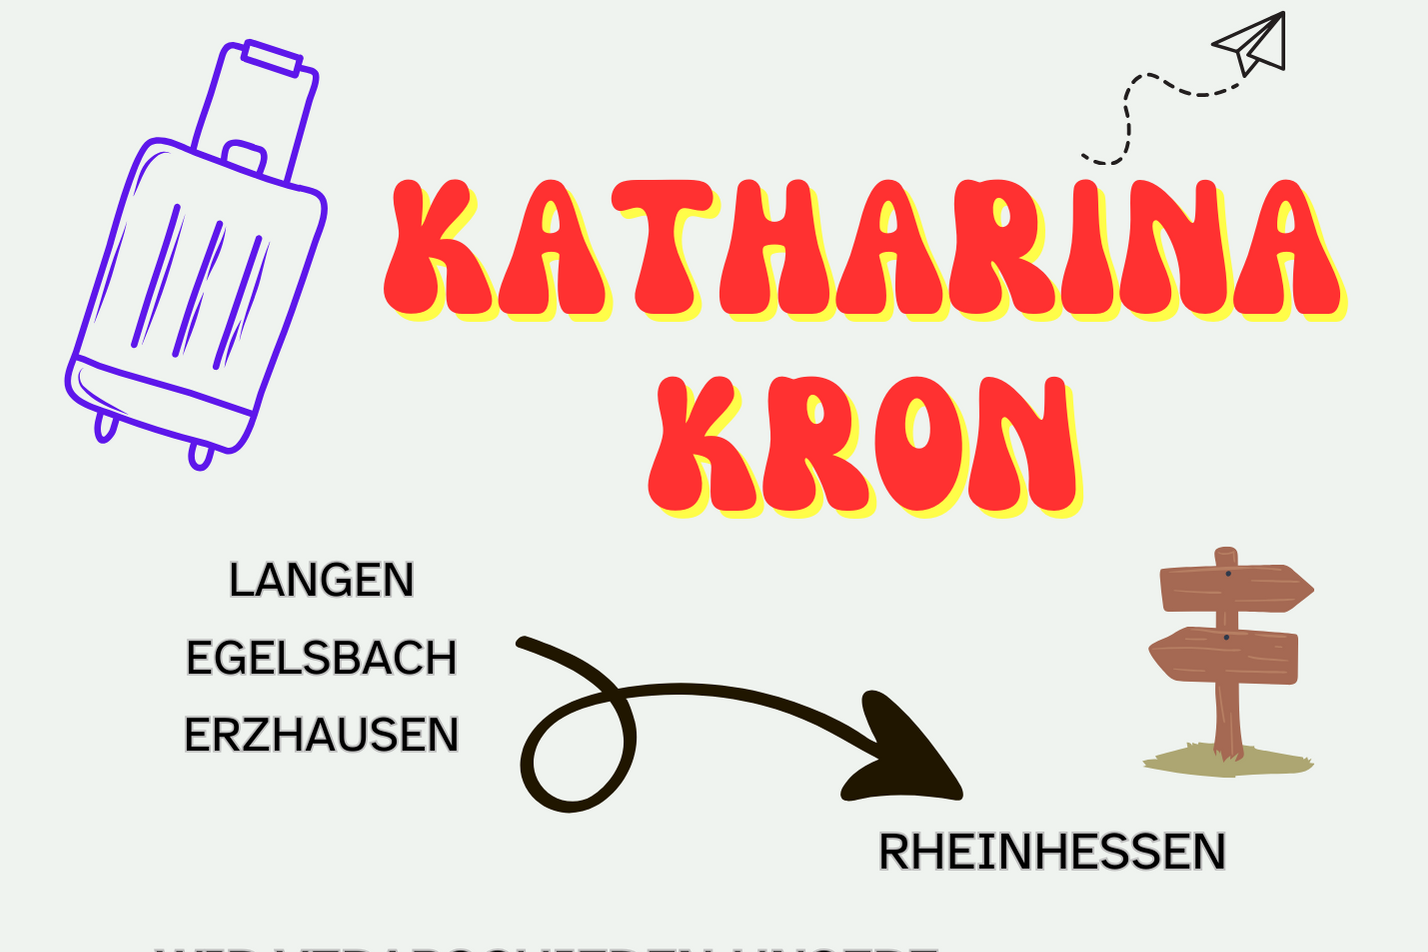 Katharina Kron Abschied